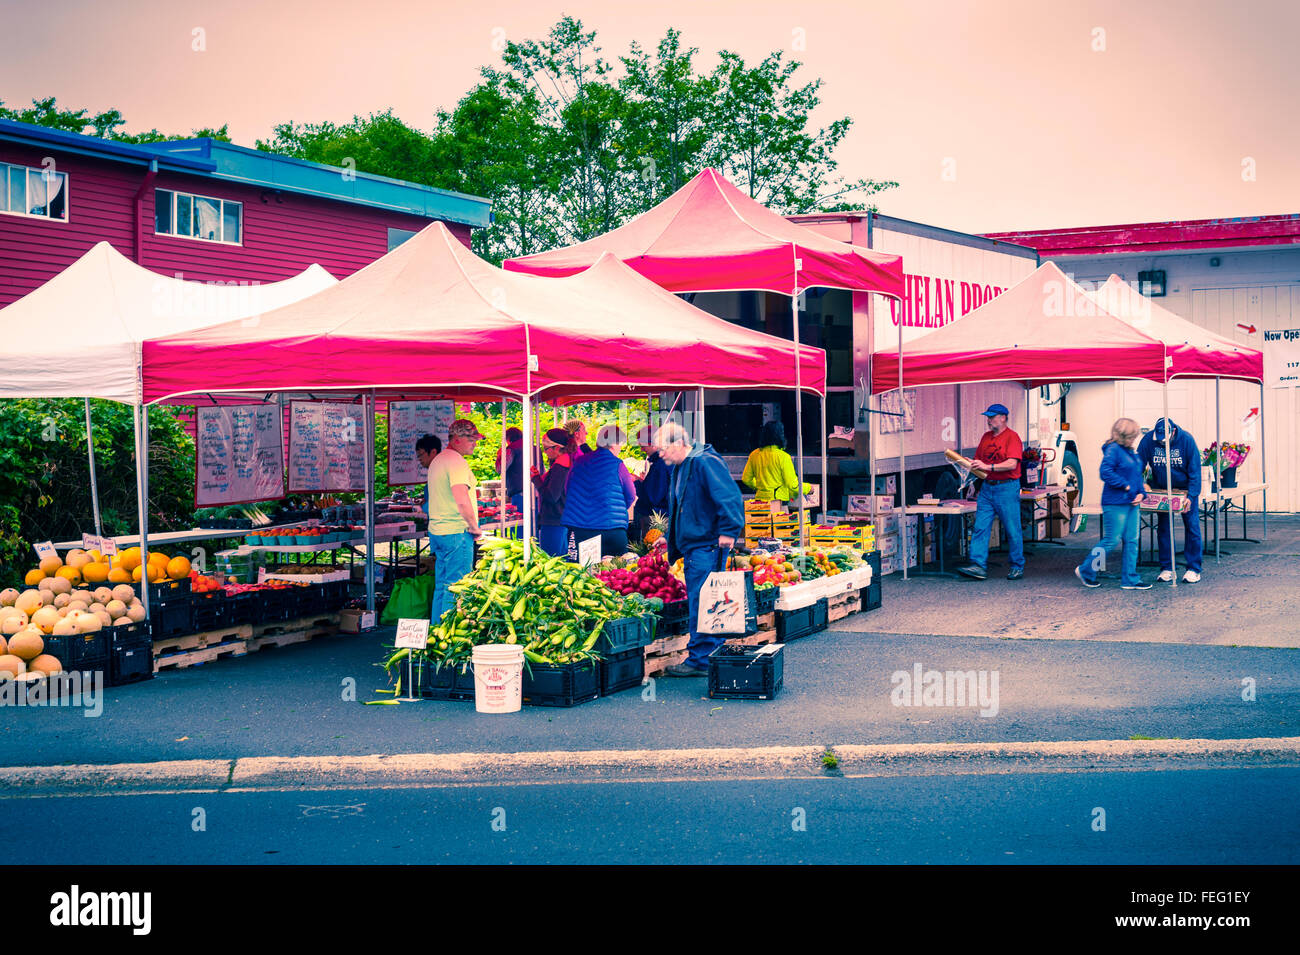 Chelan zu produzieren, eine open air Farmers Market in Sitka, Alaska, USA. Verkauf von biologischem Obst und Gemüse. Stockfoto